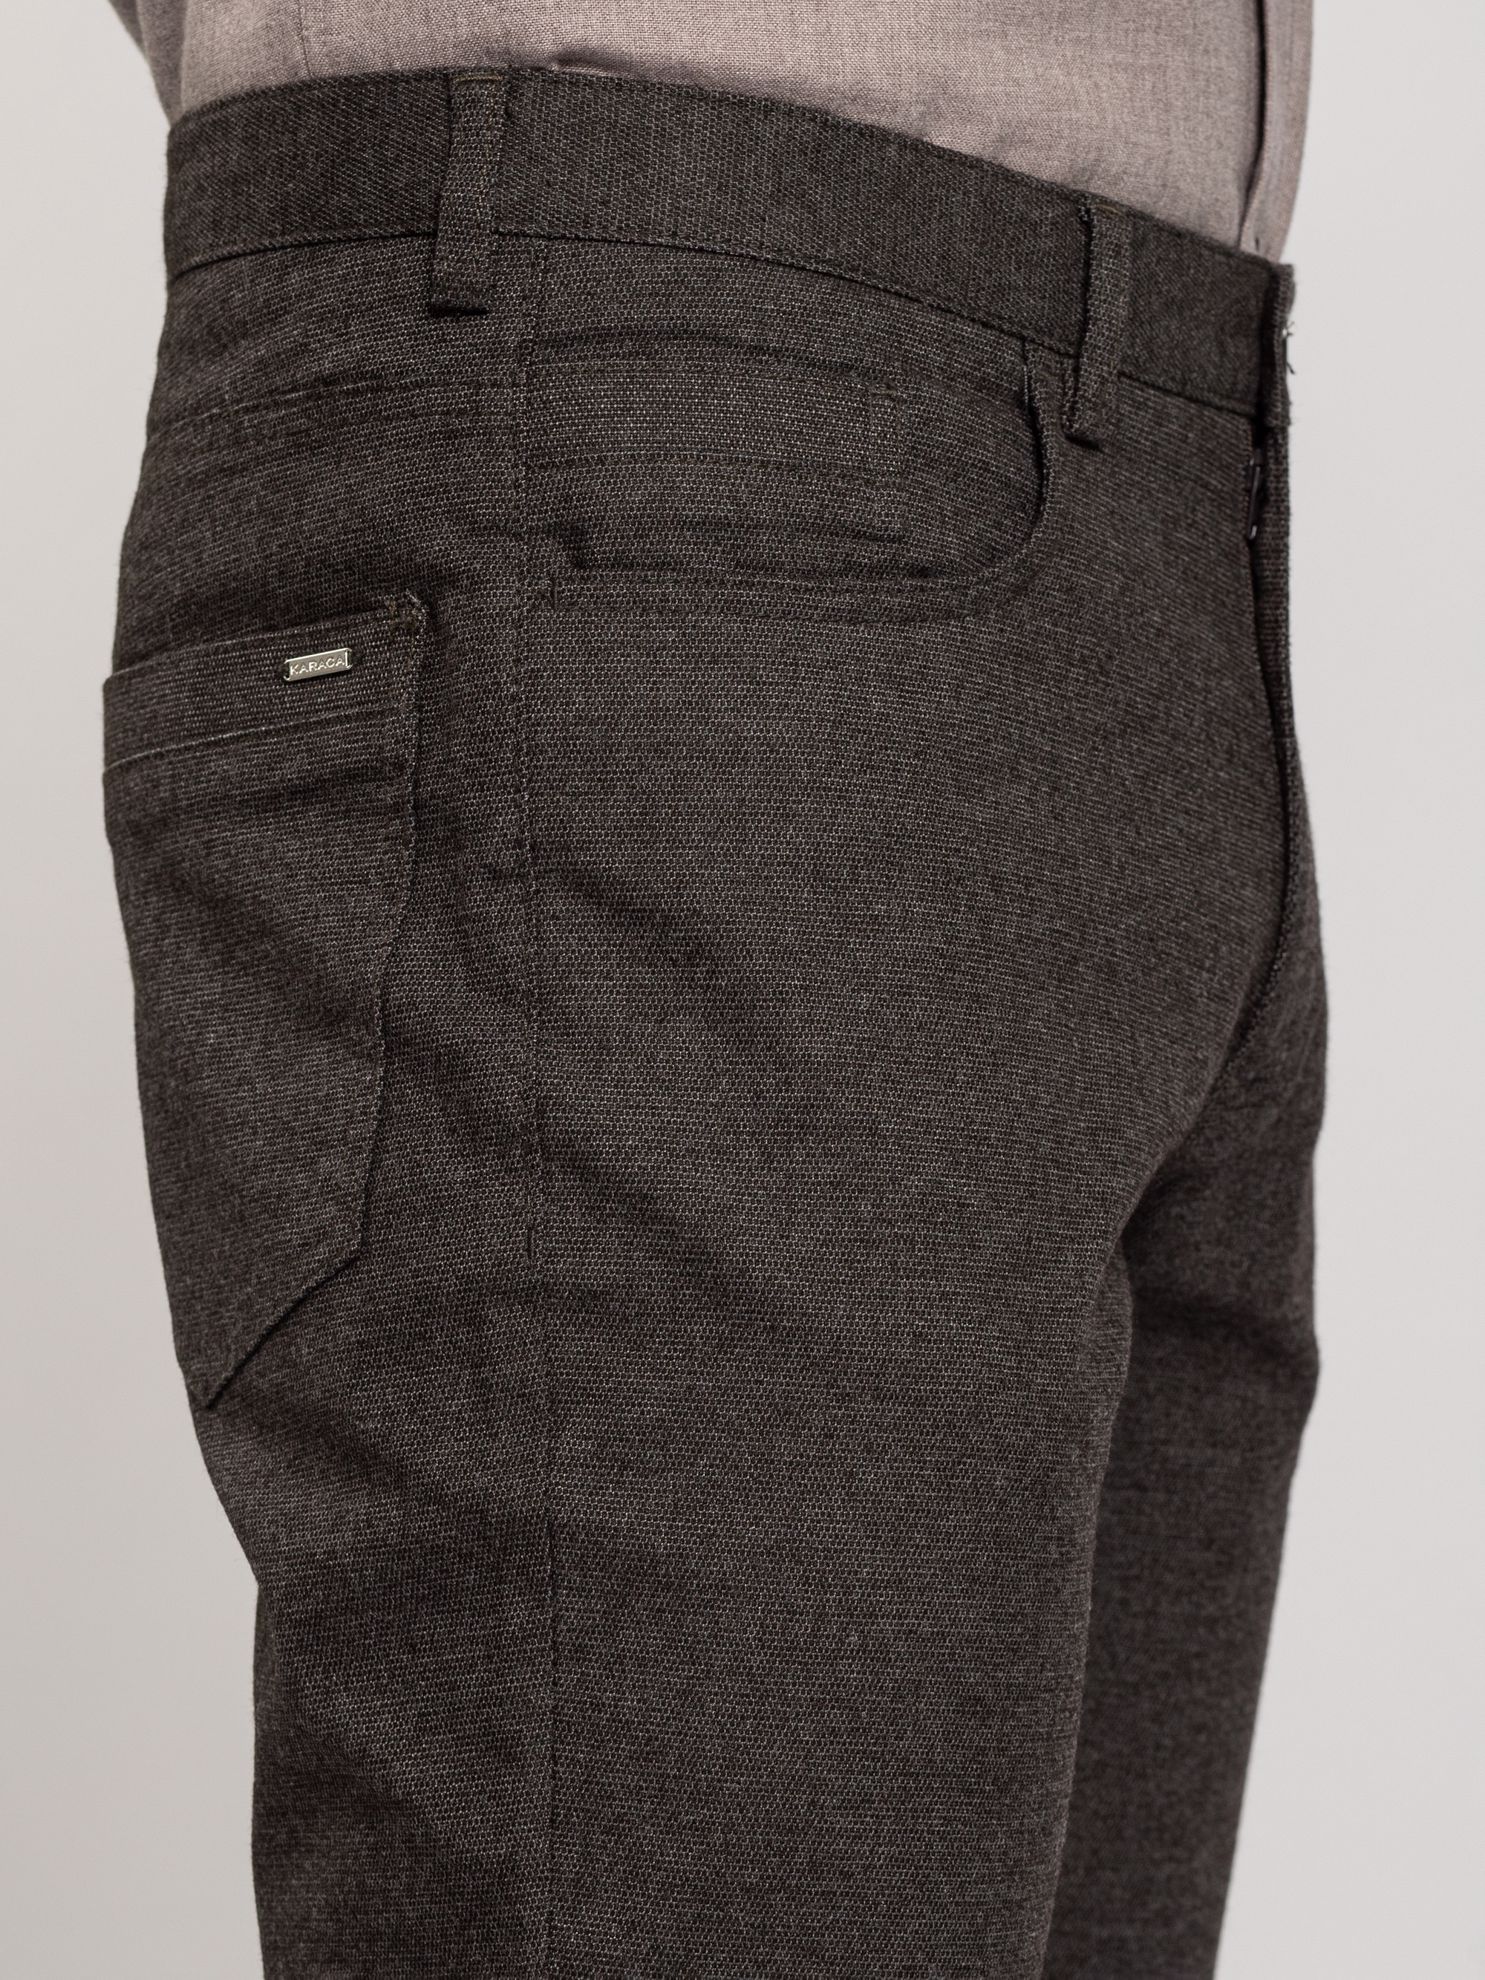 Karaca Erkek 6 Drop Pantolon-Koyu Kahve. ürün görseli